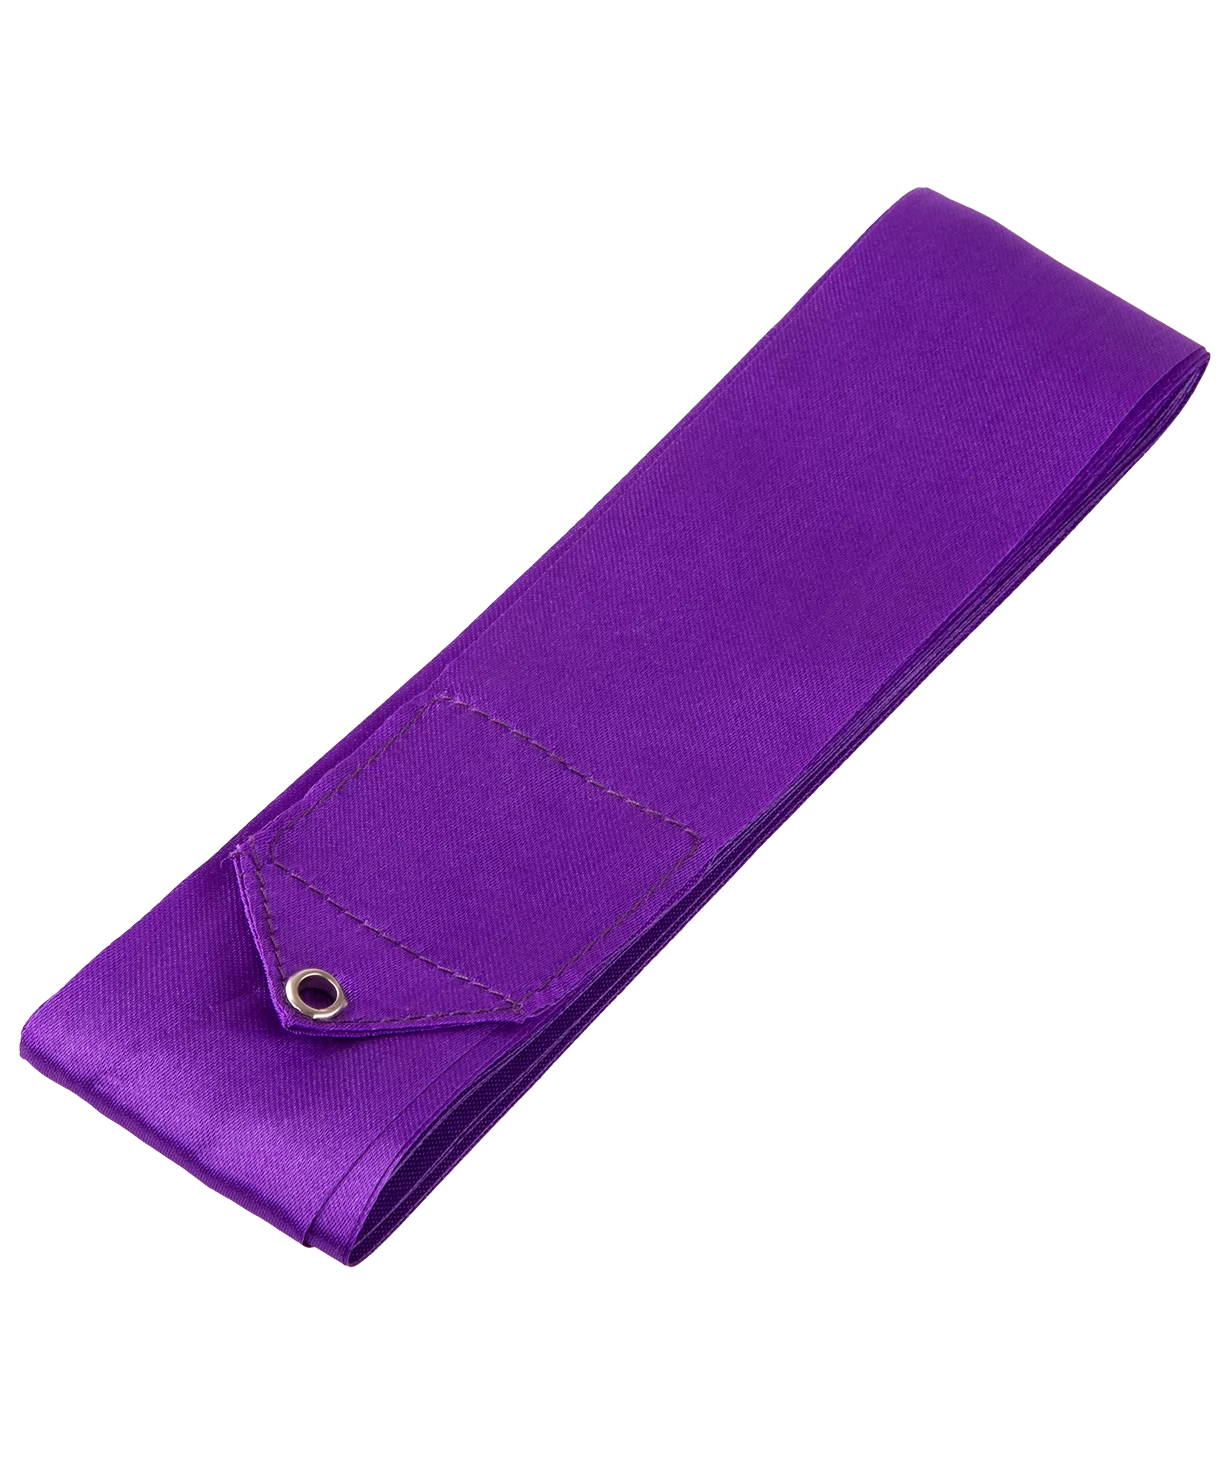 Реальное фото Лента для художественной гимнастики с палочкой 6 м Amely AGR-301 56 см фиолетовый УТ-00017648 от магазина СпортСЕ